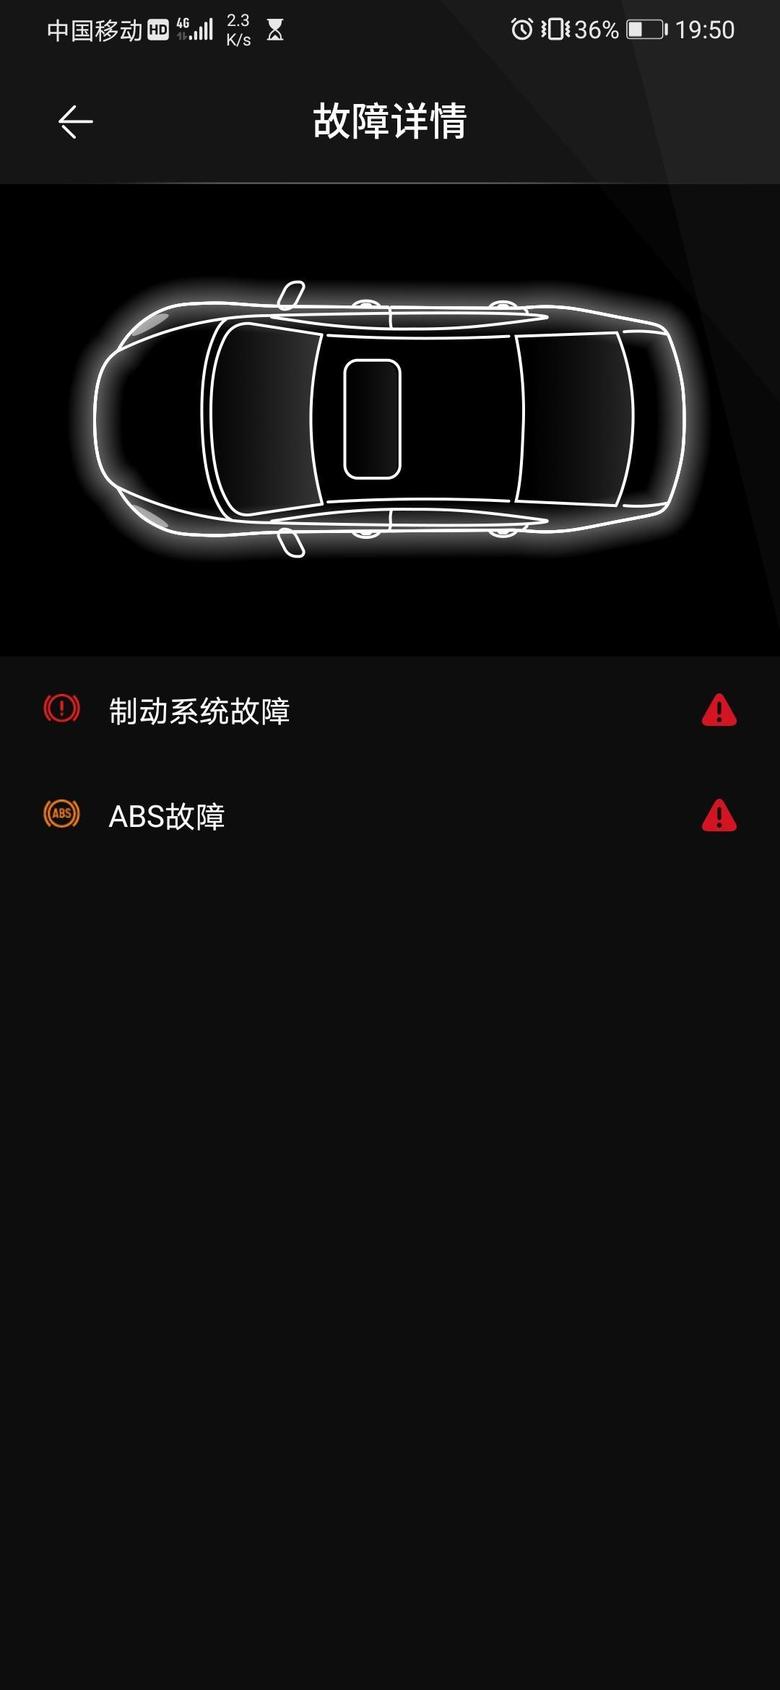 马自达cx4 今天打开app发现这两个故障提示，但车上没有任何故障灯亮起，请问各位圈友是怎么回事？